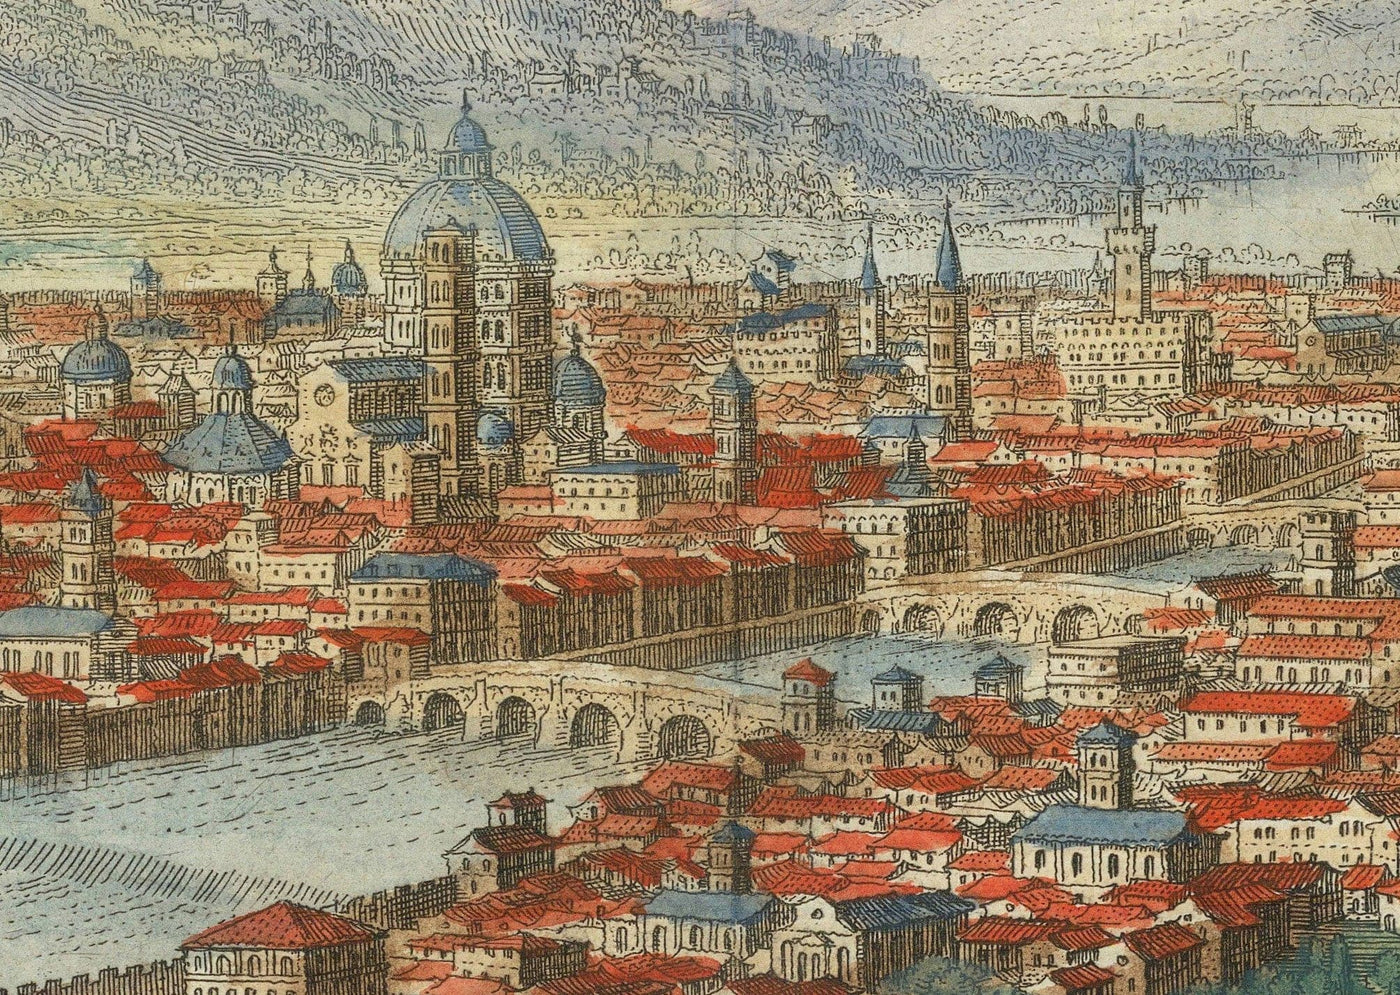 Alte Vogelperspektivenkarte von Florenz, Italien, 1640 von Matthäus Merian - Florenz, Dom, Arno, Ponte Vecchio, Uffizien